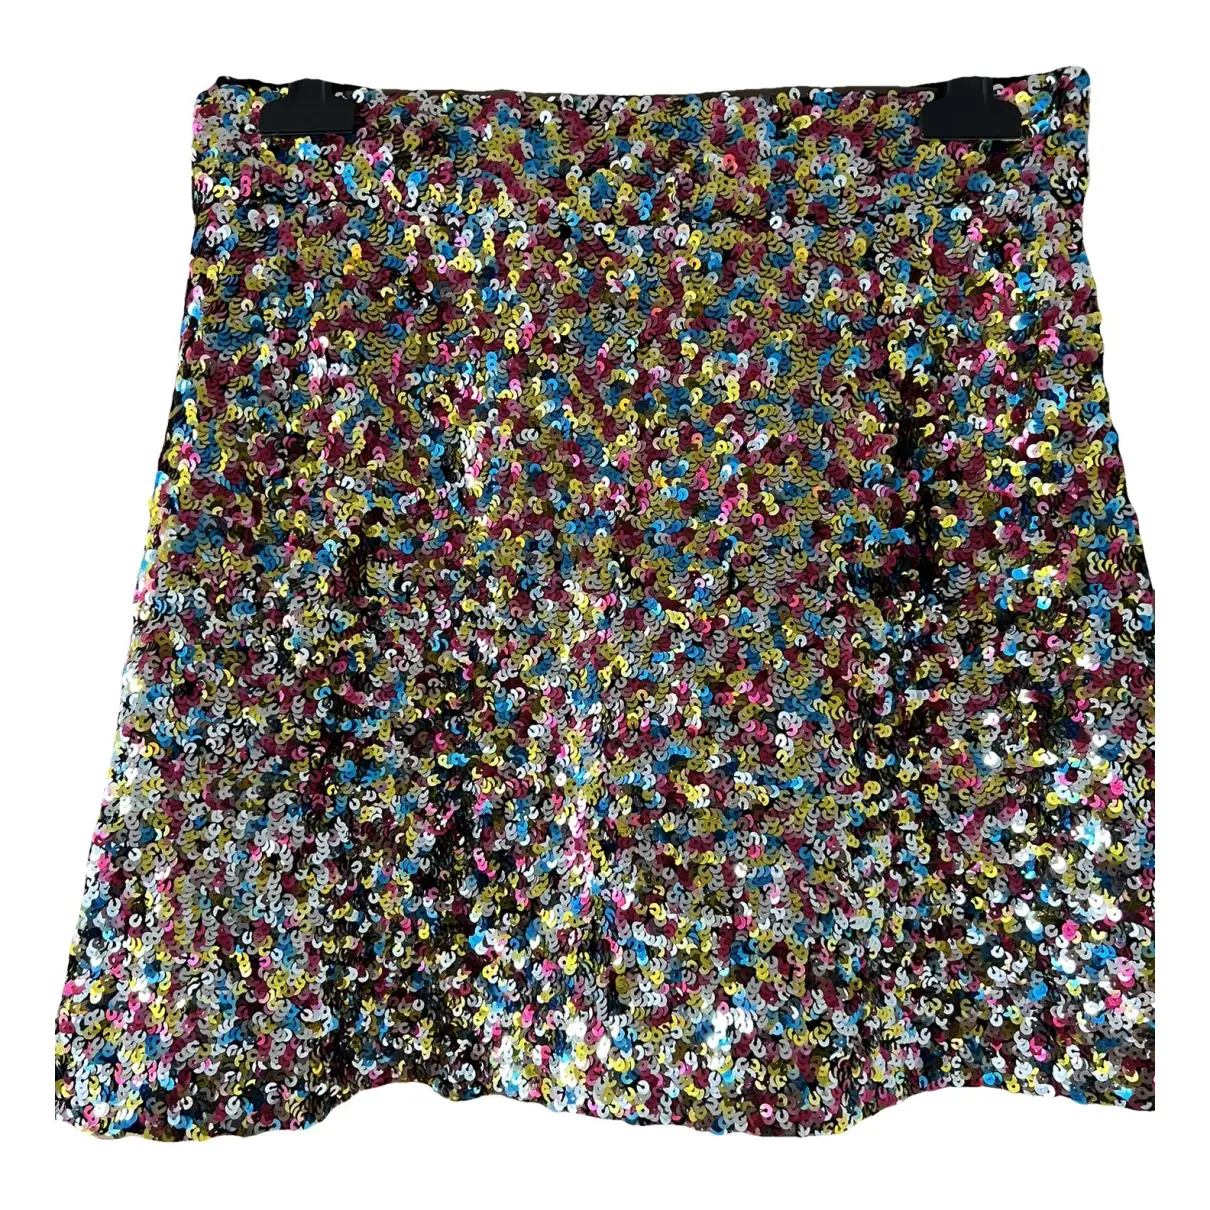 Glitter mini skirt